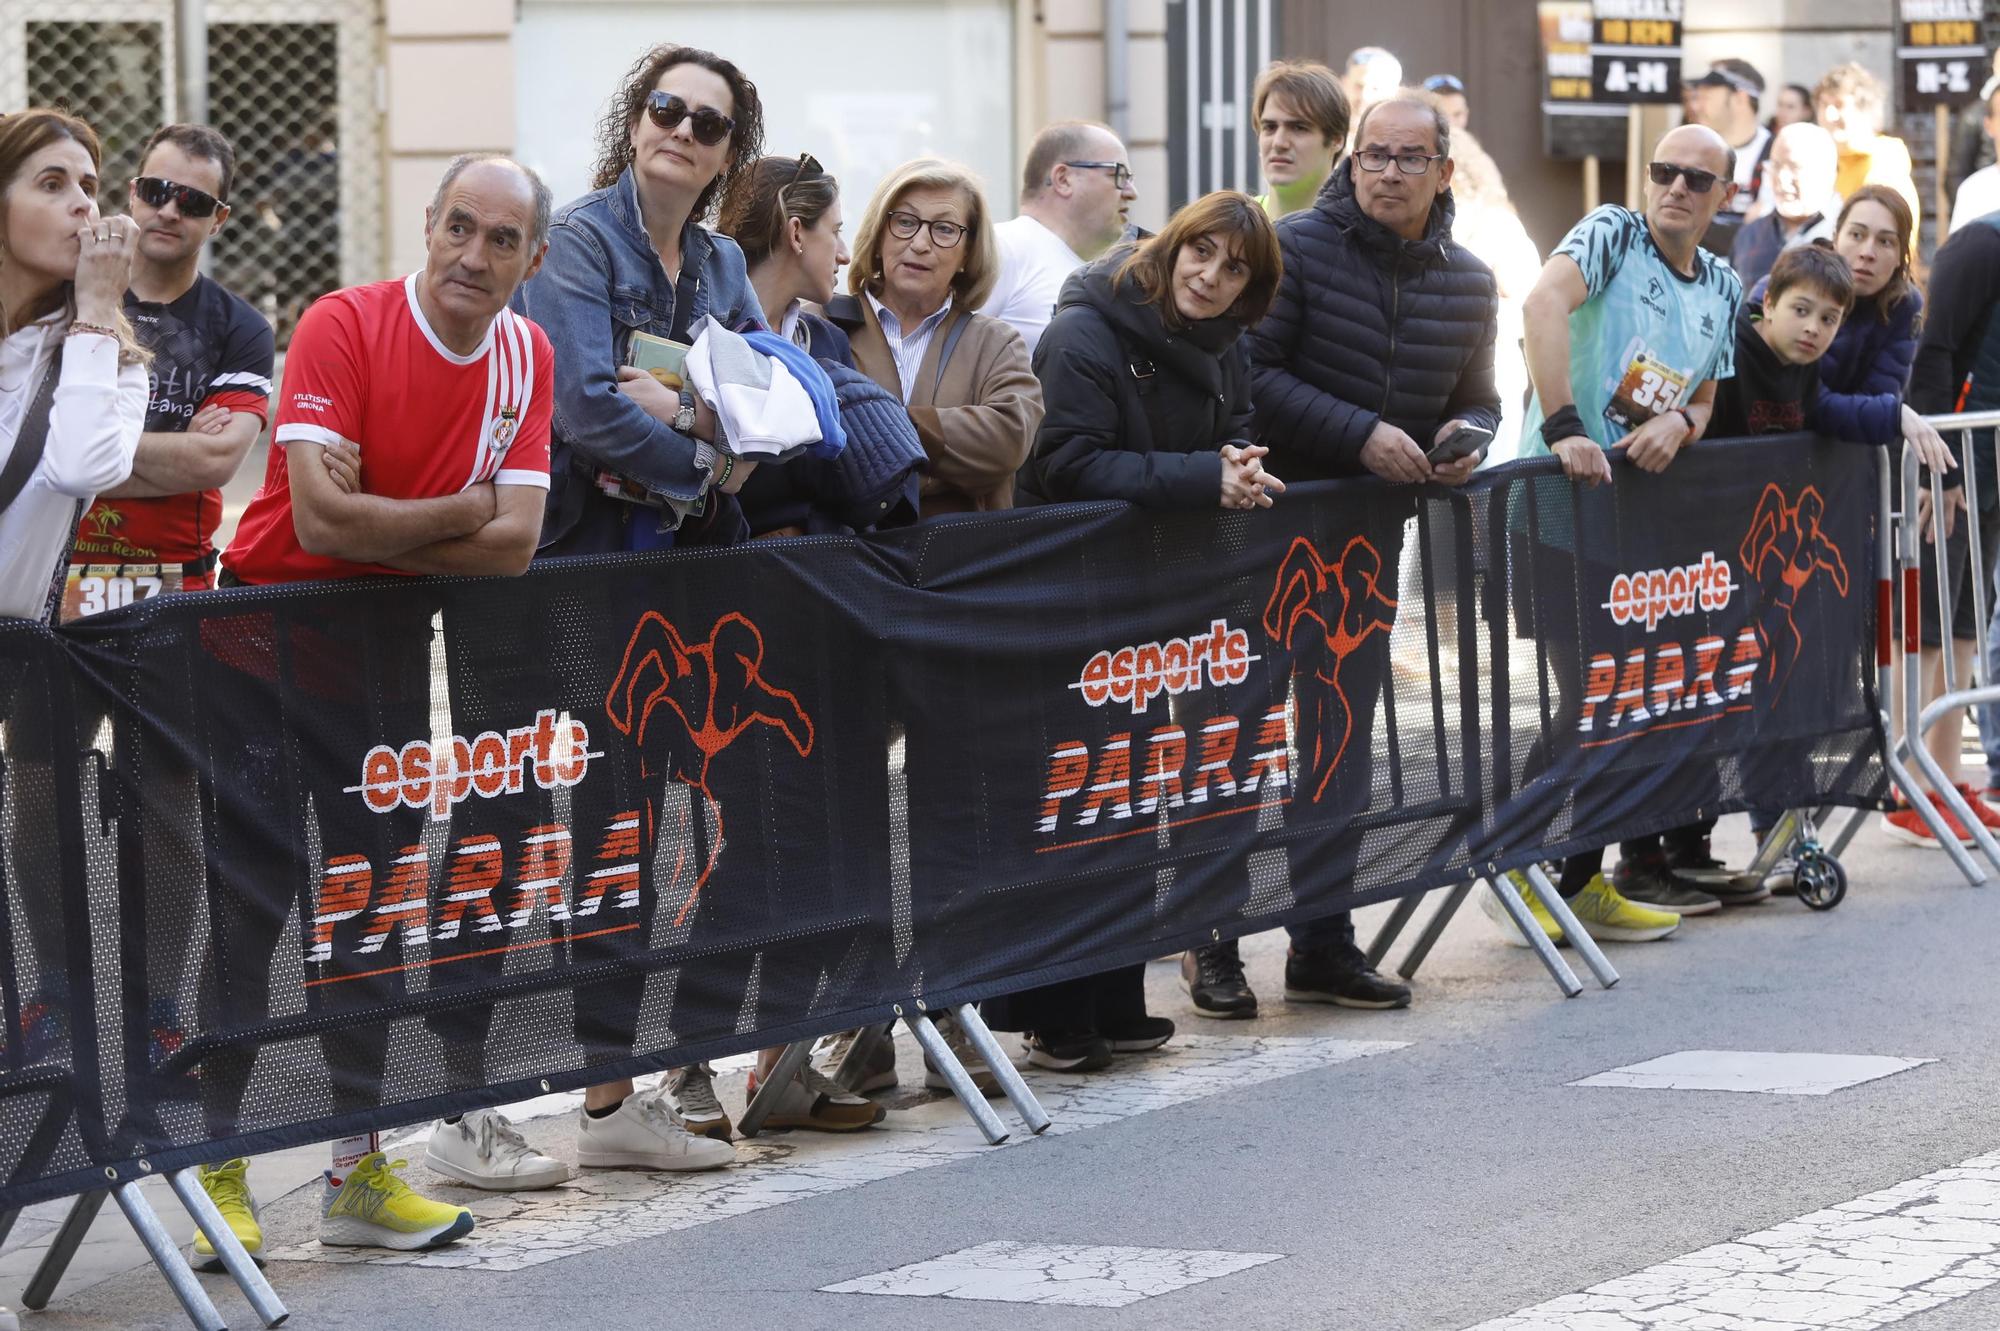 GALERIA DE FOTOS | Totes les imatges de la Cursa 10 Km Girona d'Esports Parra